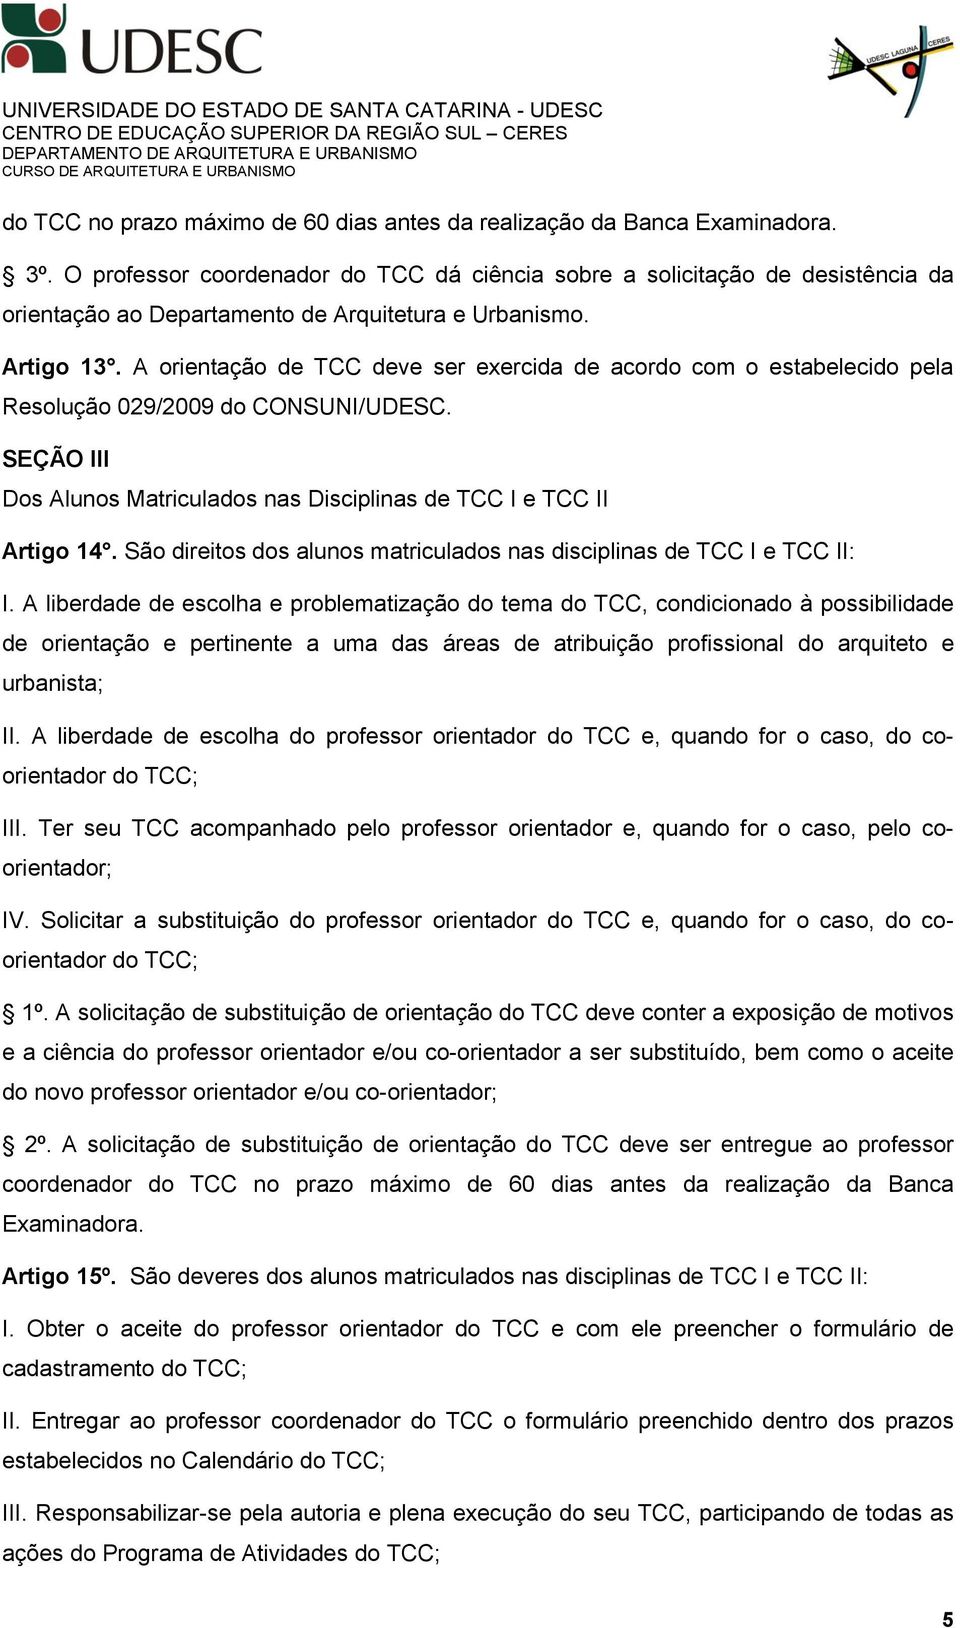 A orientação de TCC deve ser exercida de acordo com o estabelecido pela Resolução 029/2009 do CONSUNI/UDESC. SEÇÃO III Dos Alunos Matriculados nas Disciplinas de TCC I e TCC II Artigo 14.